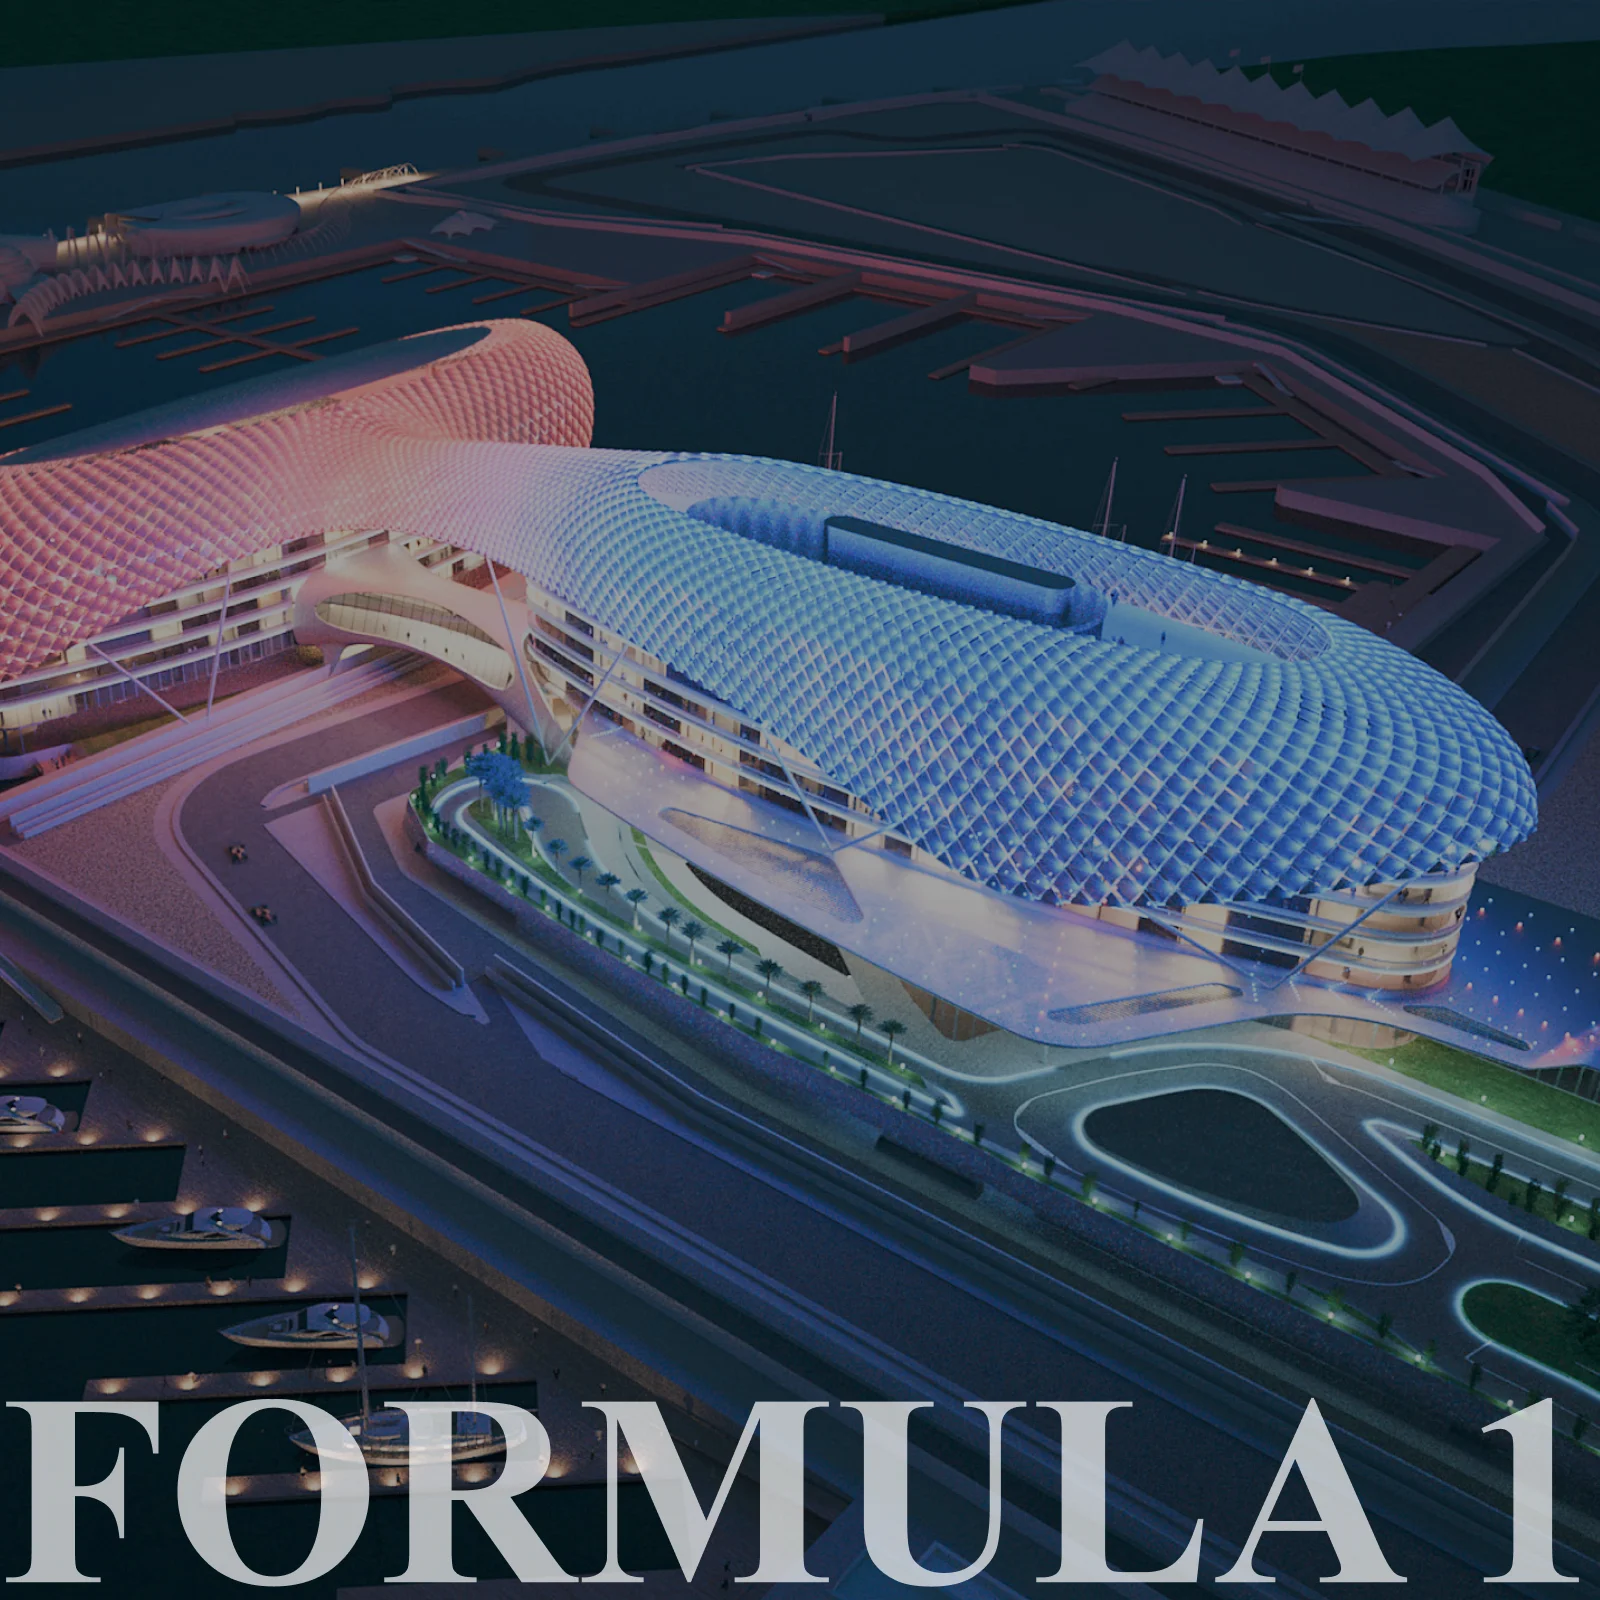 Formula 1 in Abu Dhabi